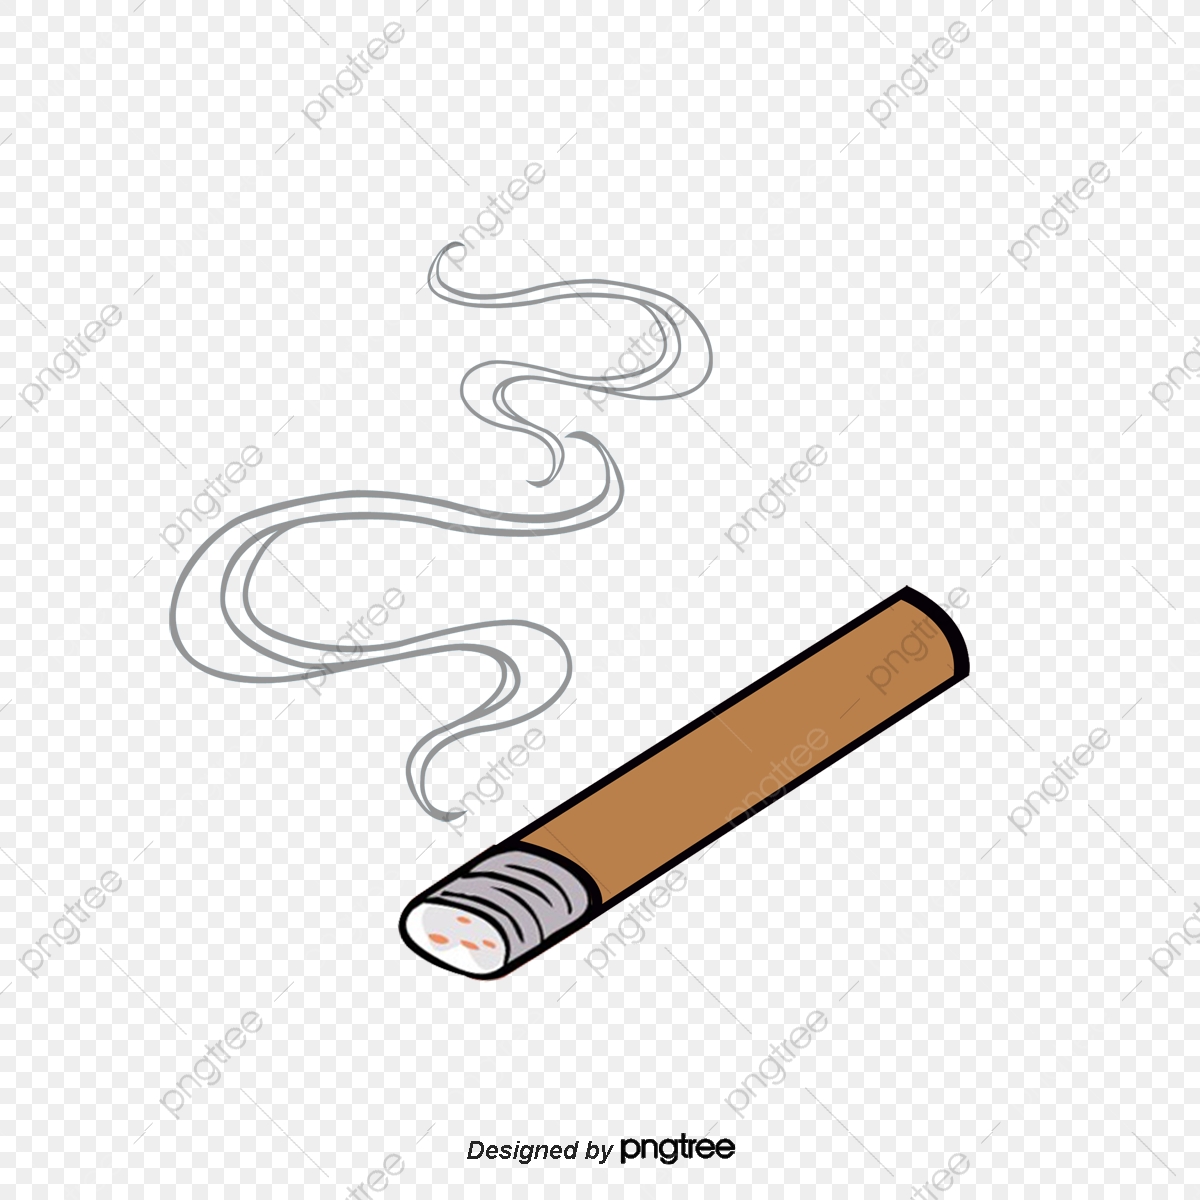 Cigarette clipart file. Cigarettes smoke cigar smokes